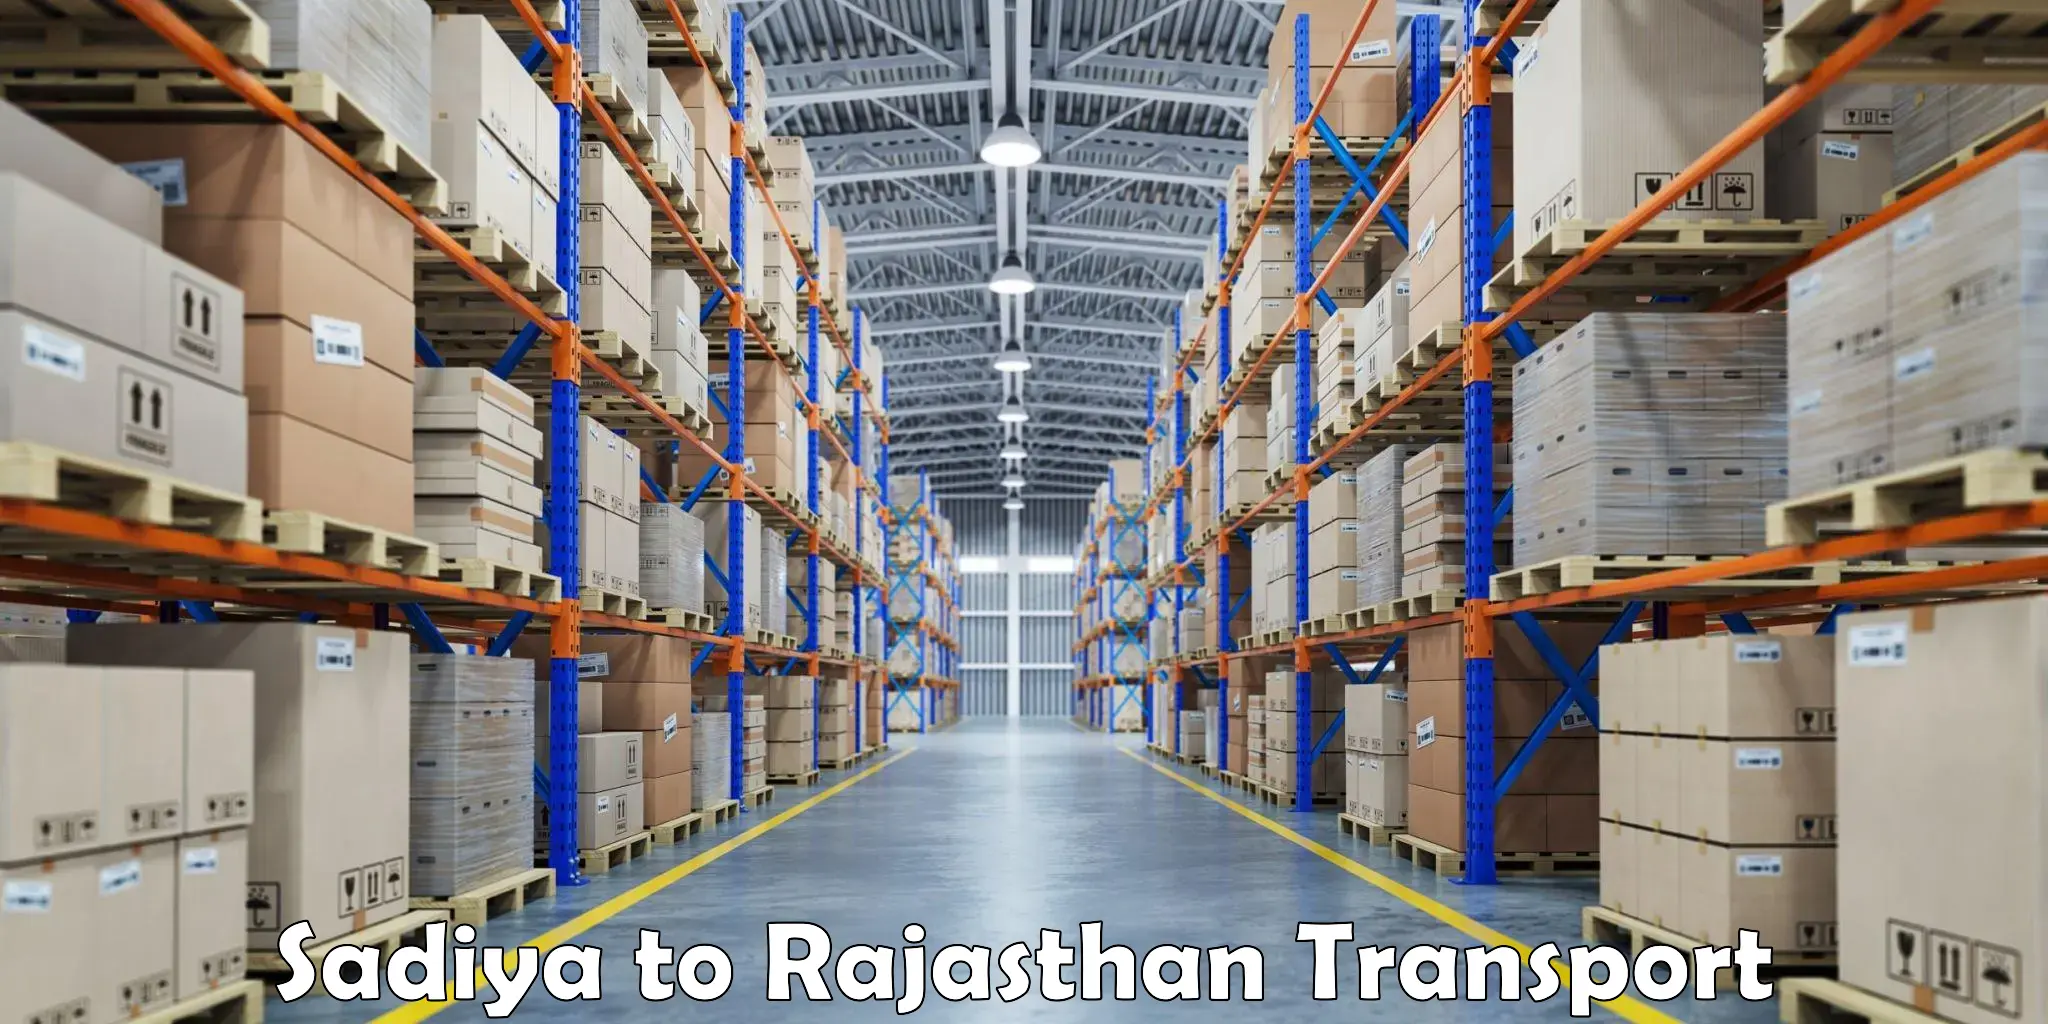 Nearby transport service Sadiya to Rajasthan